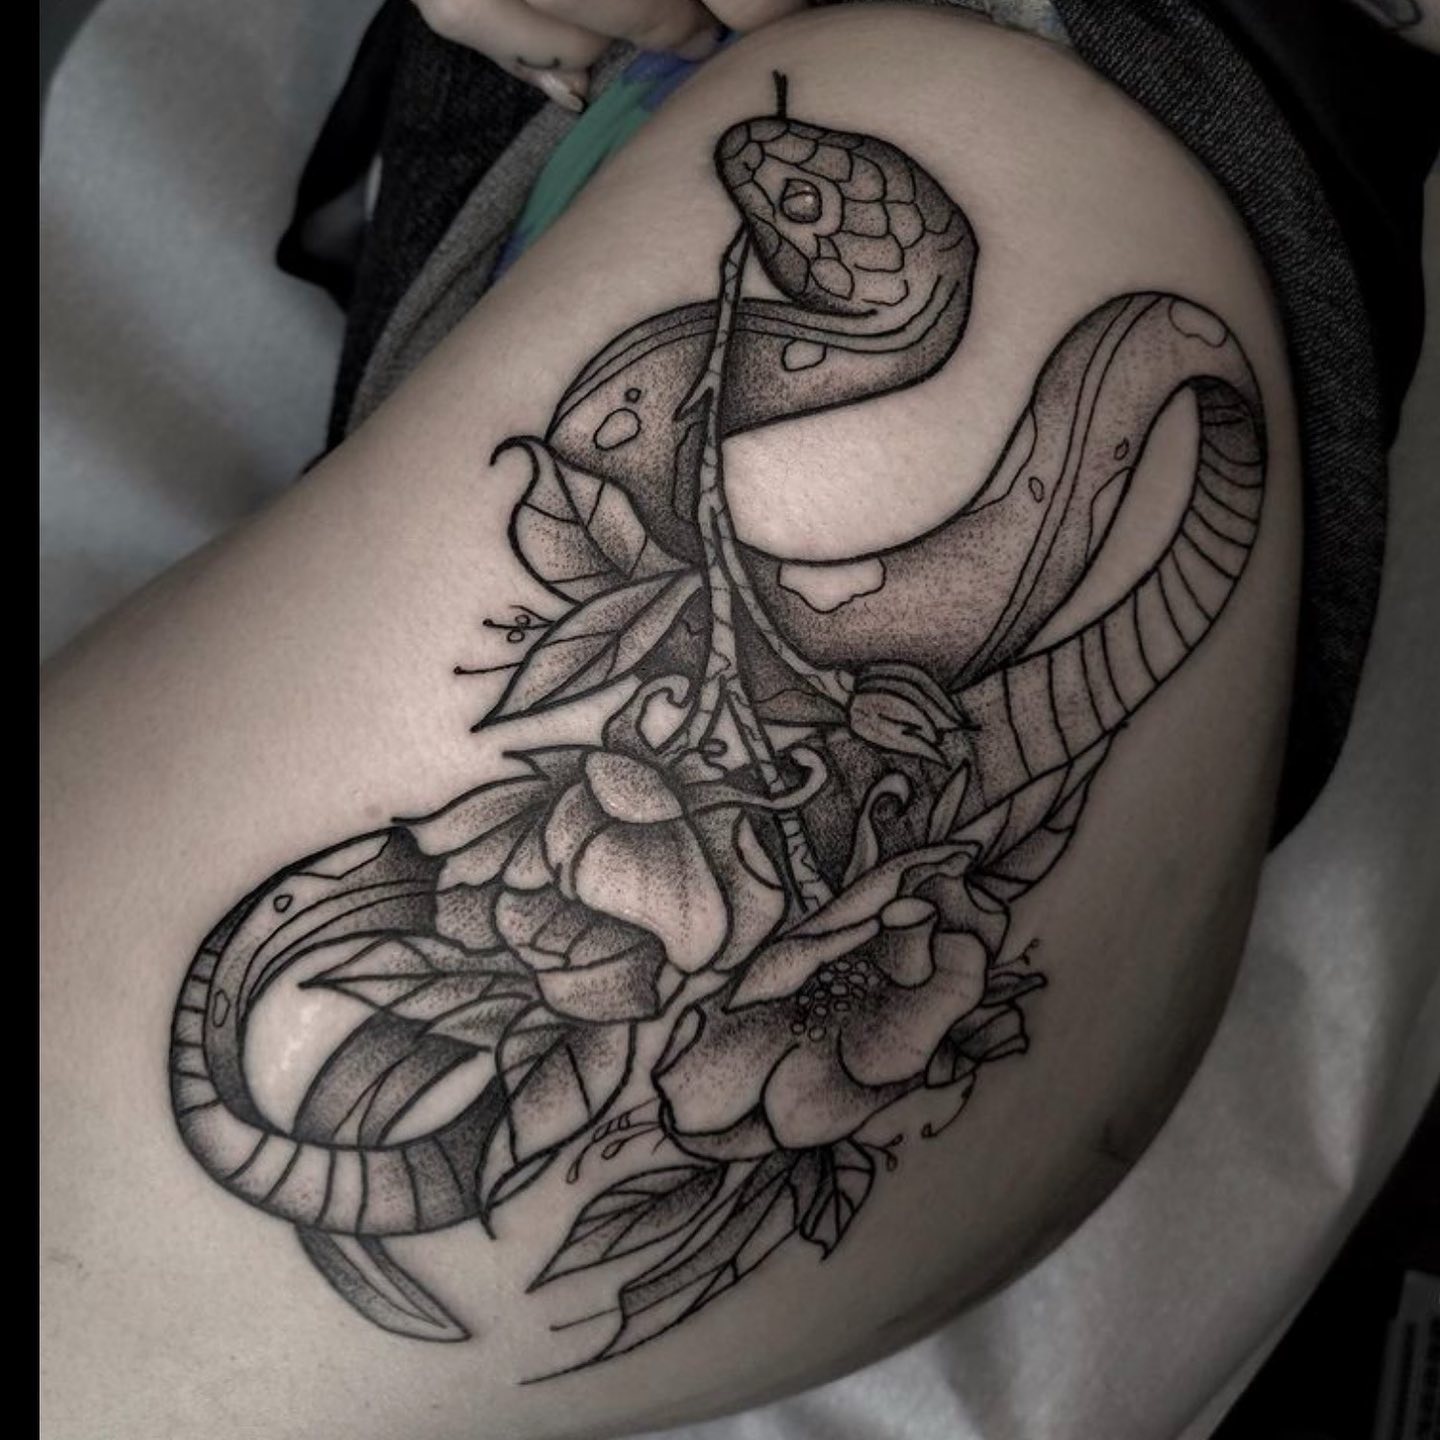 Serpent tattoo